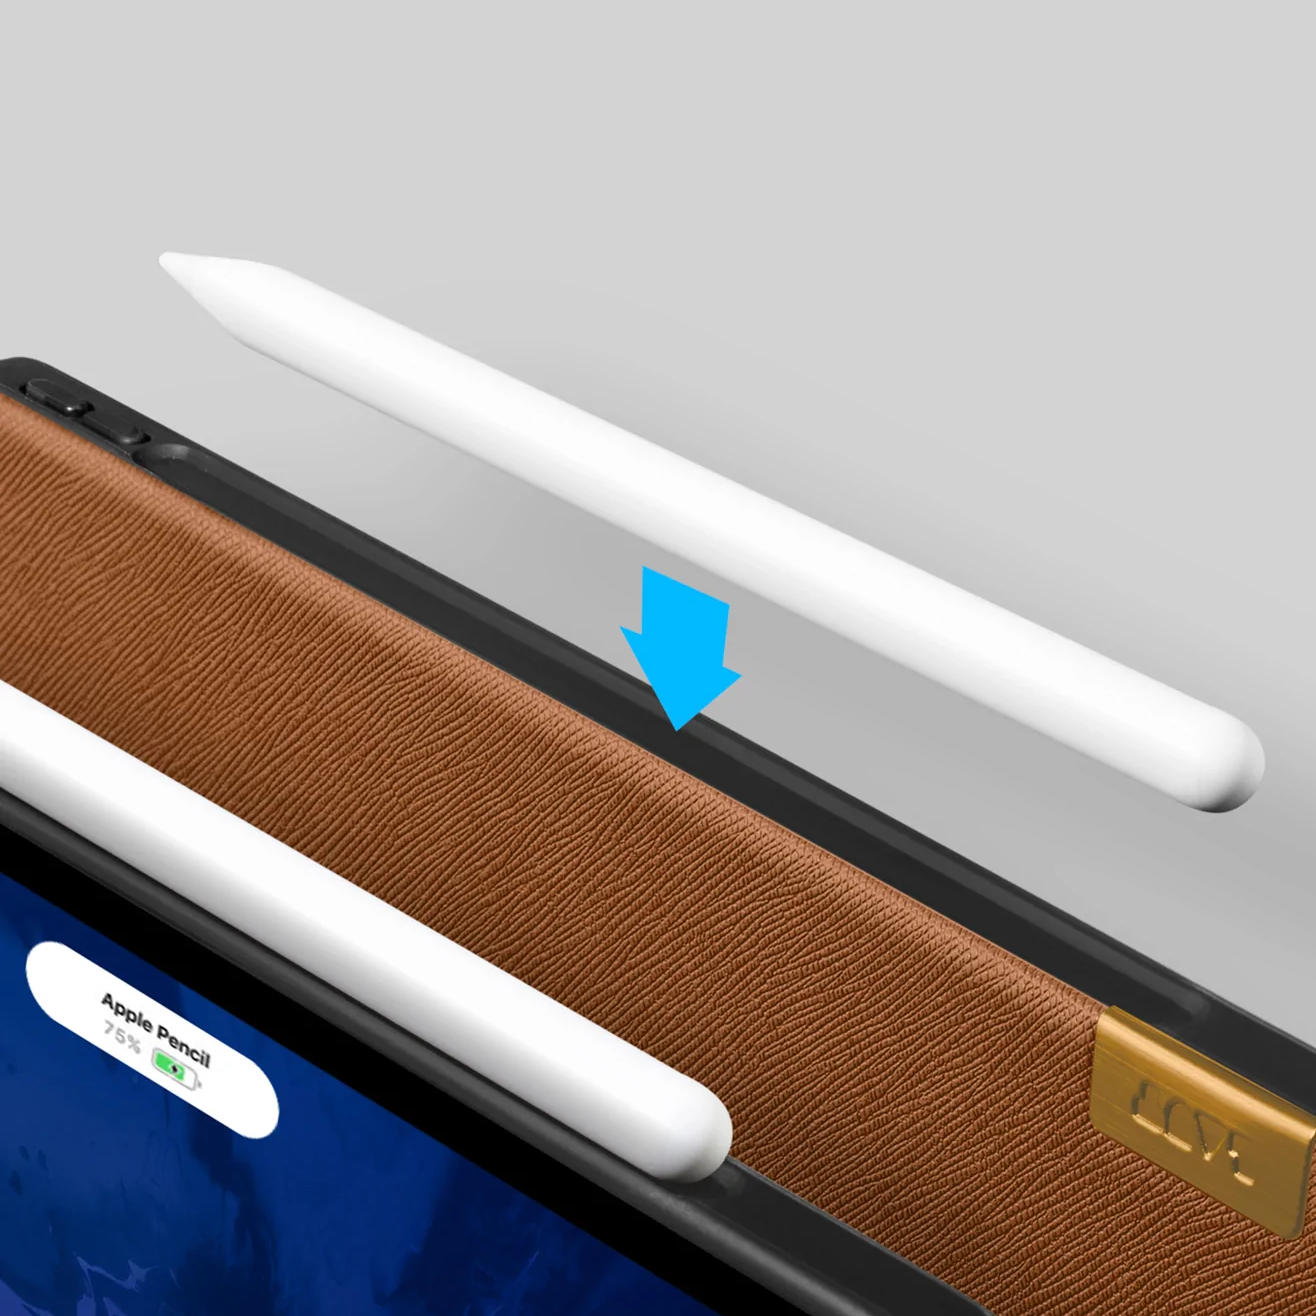 LAUT PRESTIGE Folio 軍規蜂巢 2022 iPad Pro 11吋 4代 耐衝擊保護套, 質感棕